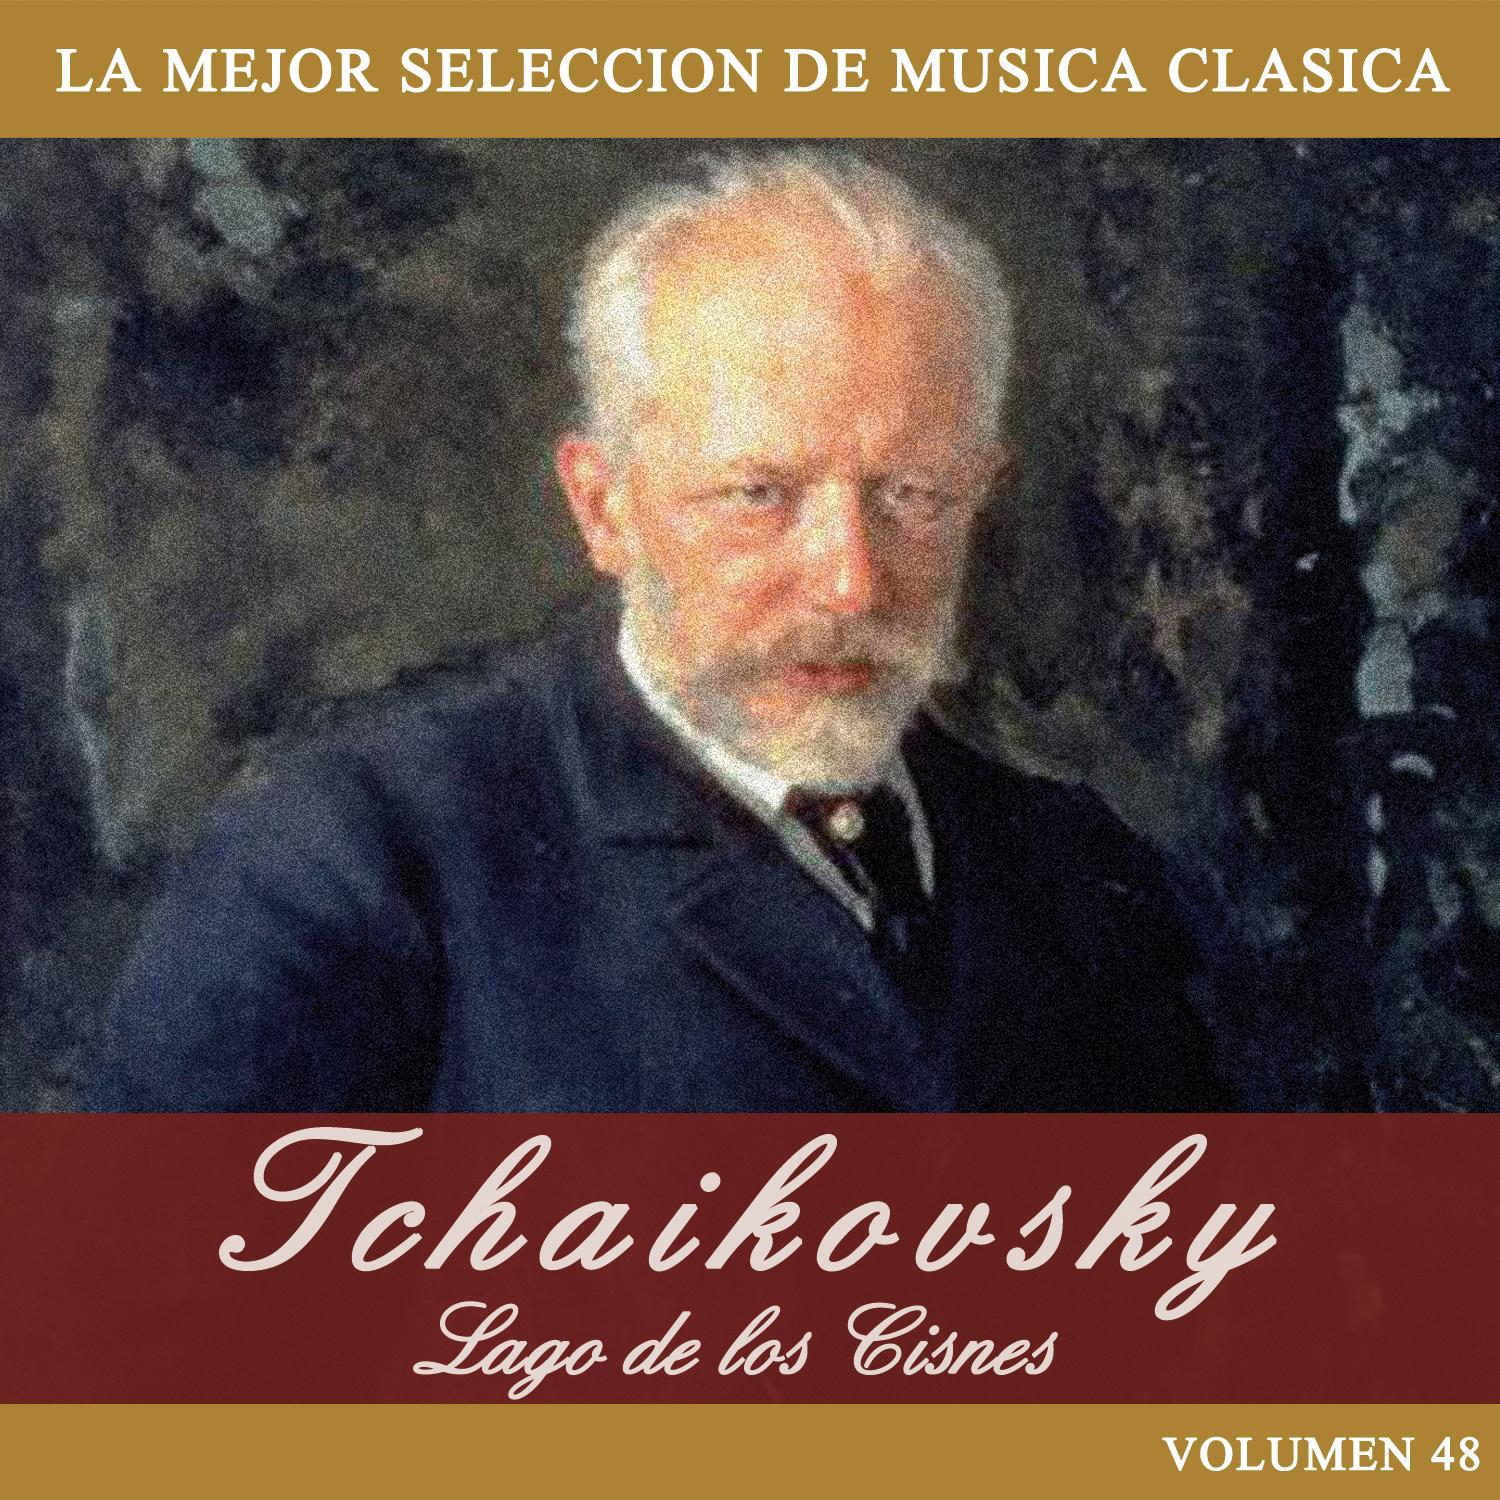 Tchaikovsky: El Lago de los Cisnes